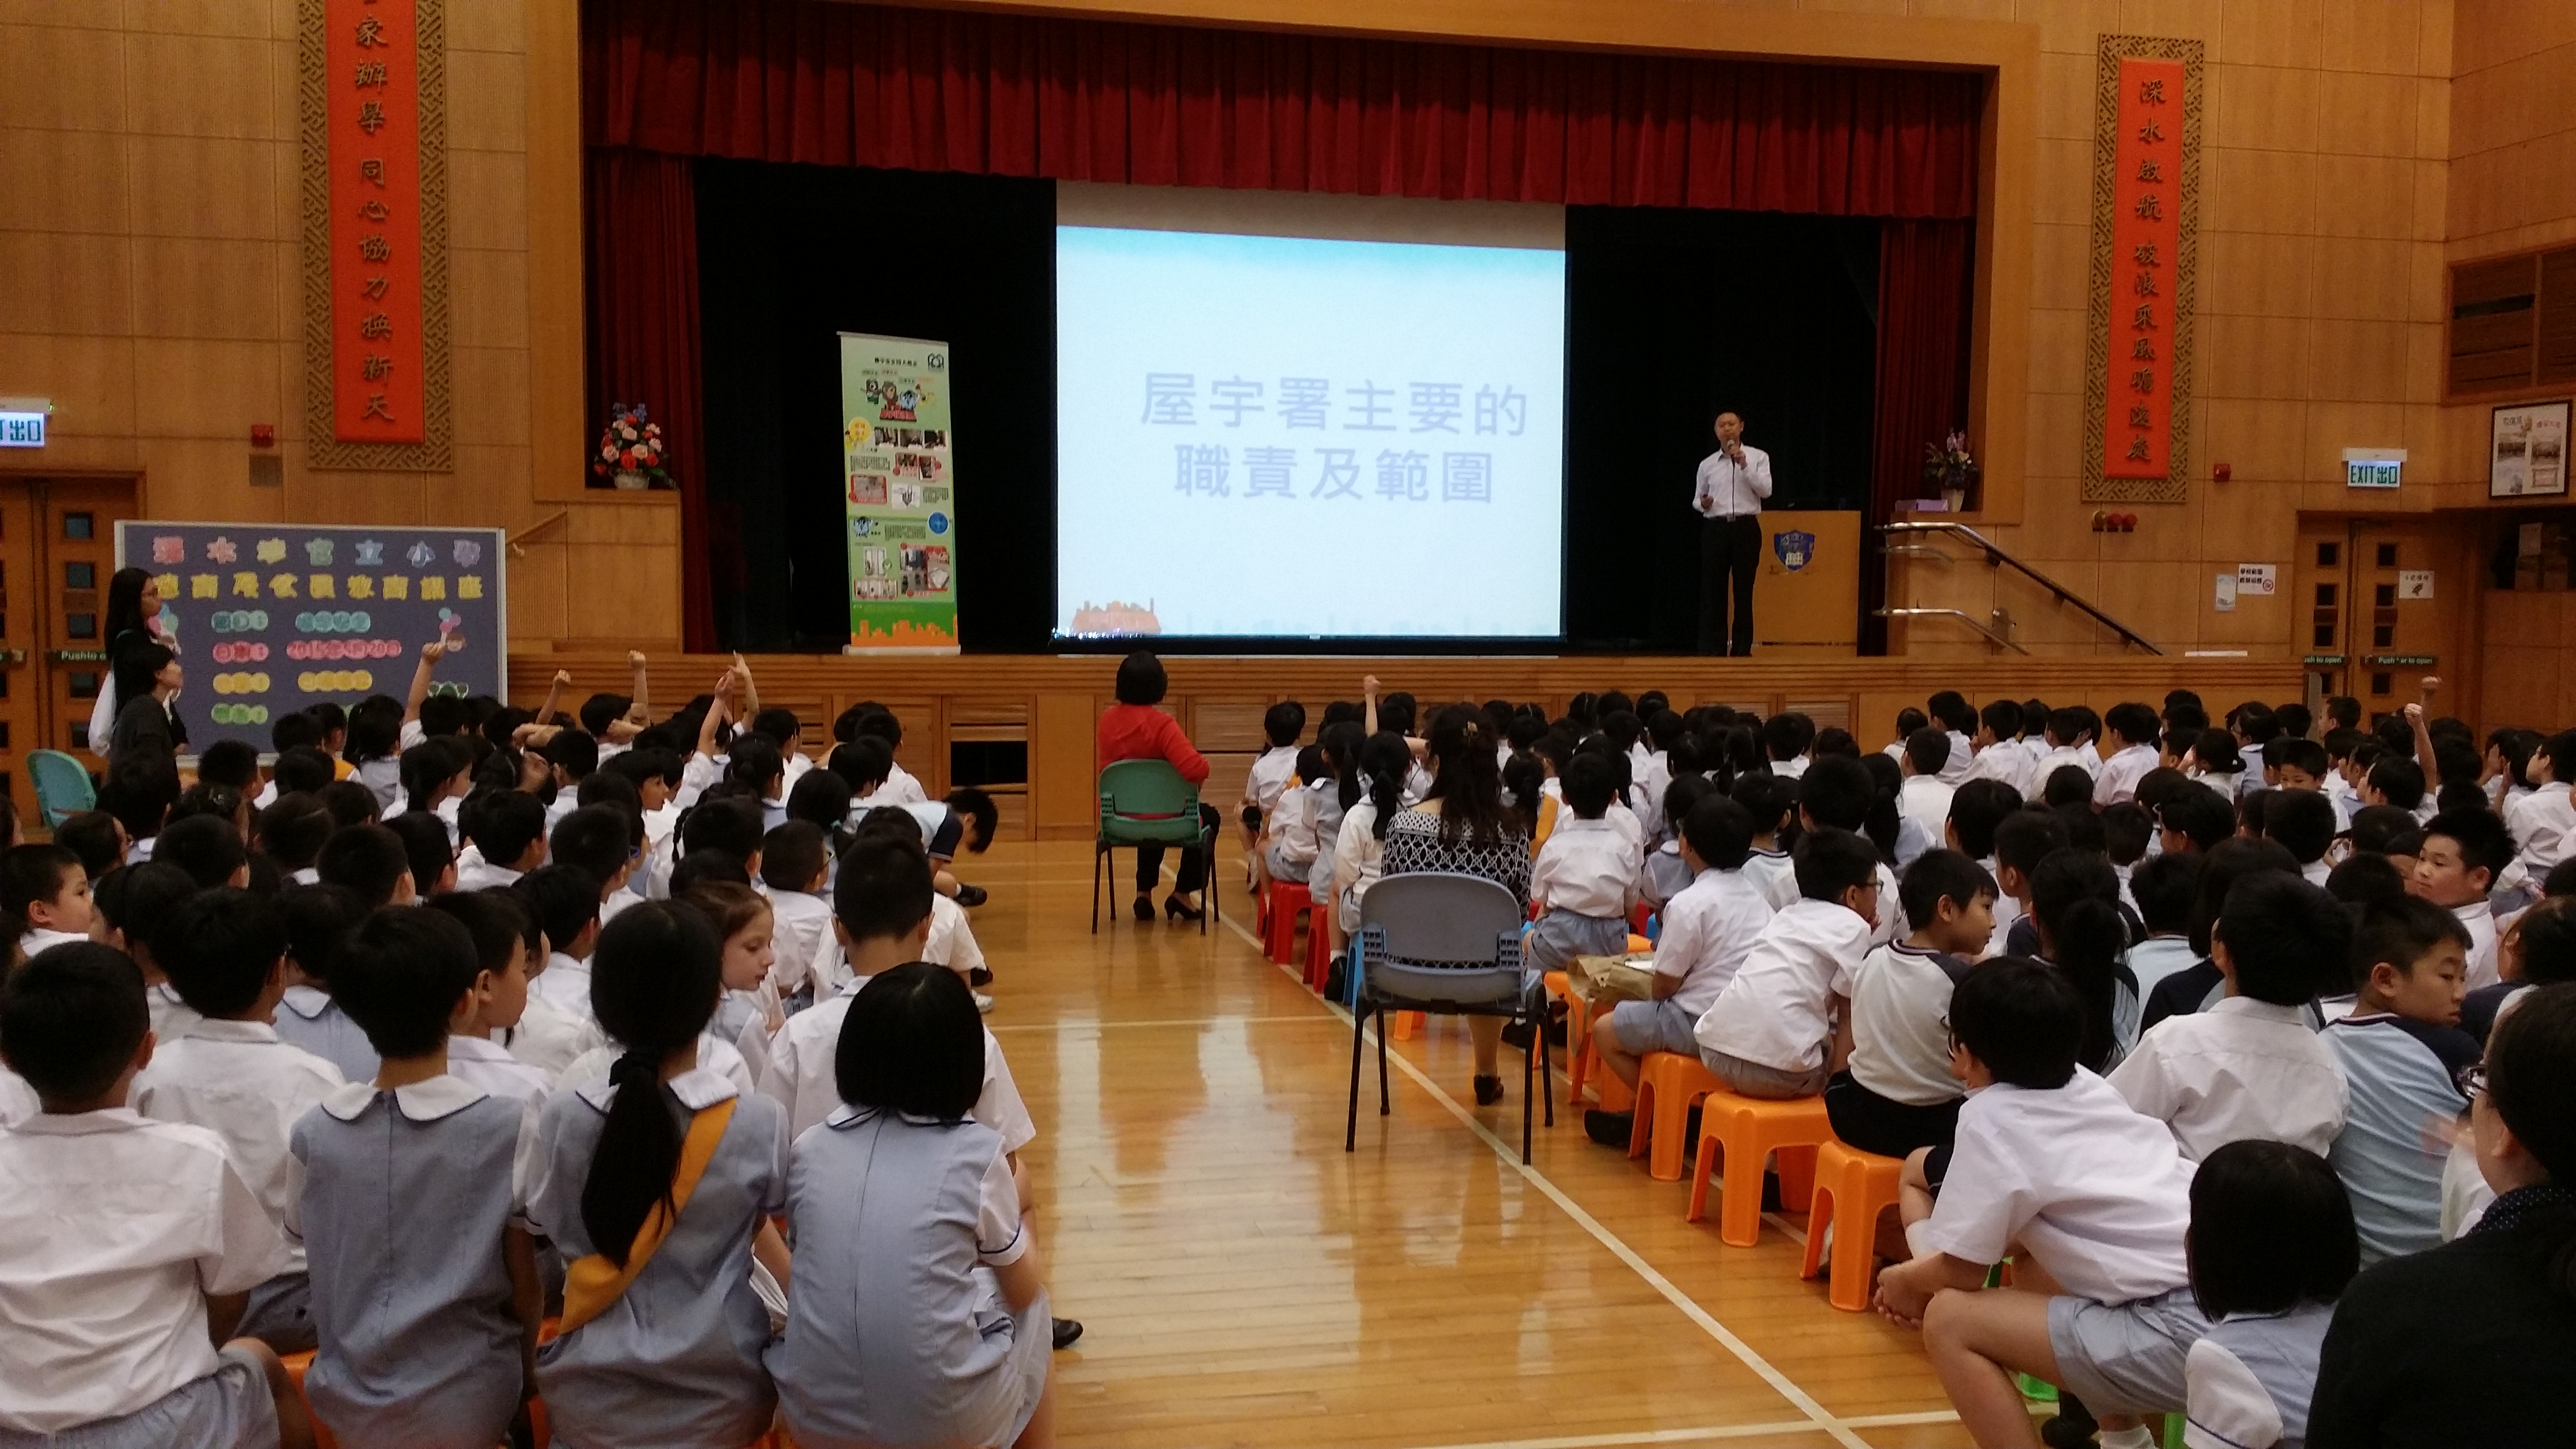 Sham Shui Po Government Primary School